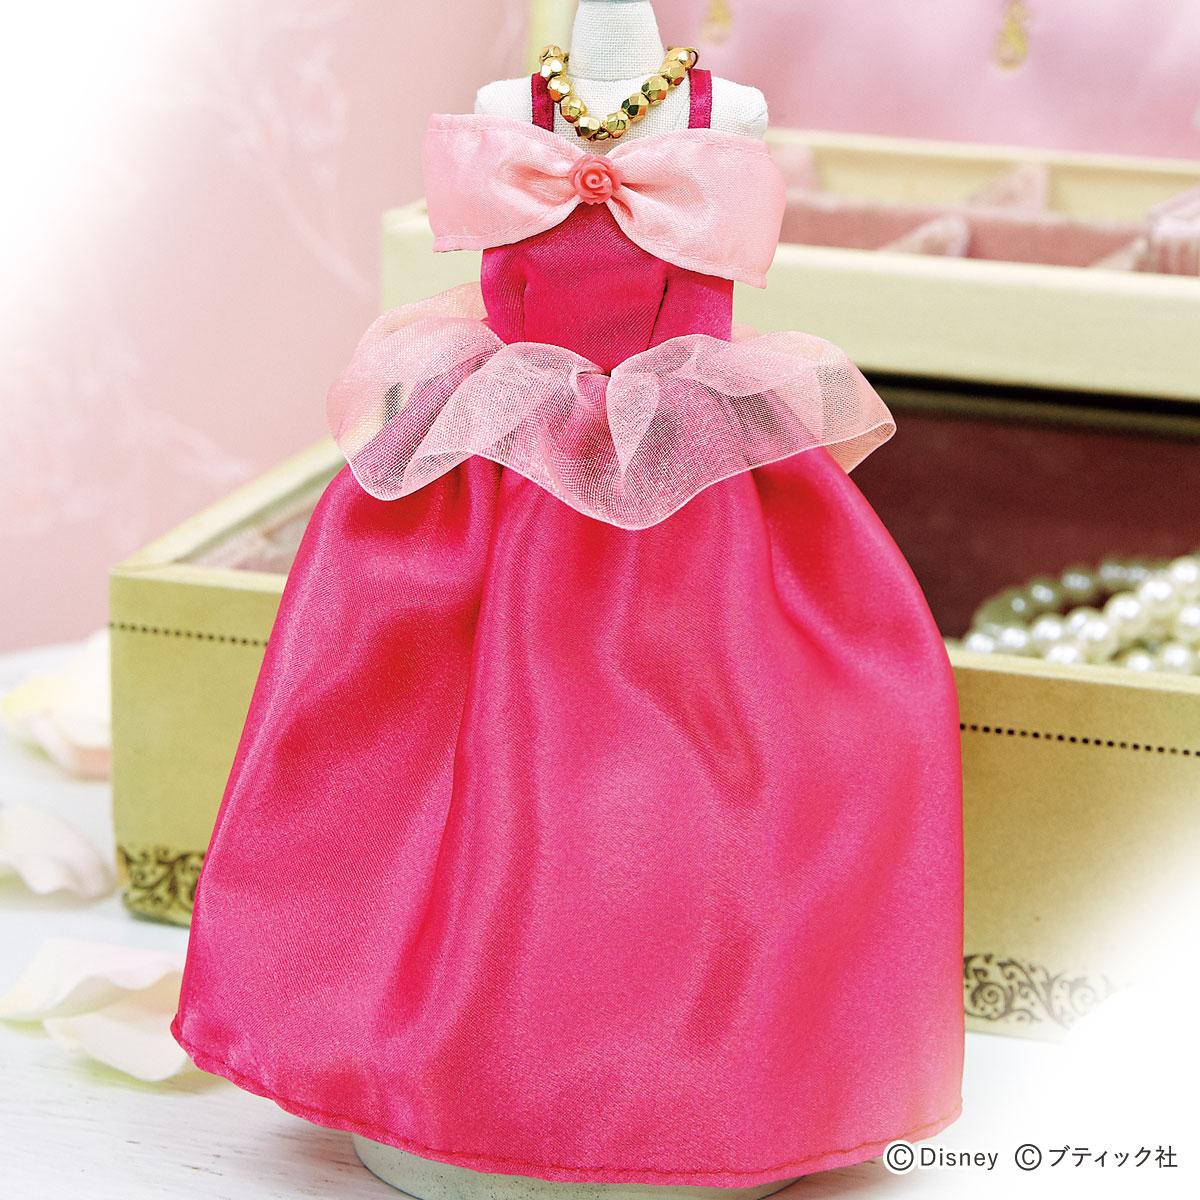 ミニチュアドレス オーロラ姫 の作り方 21年5月2日 エキサイトニュース